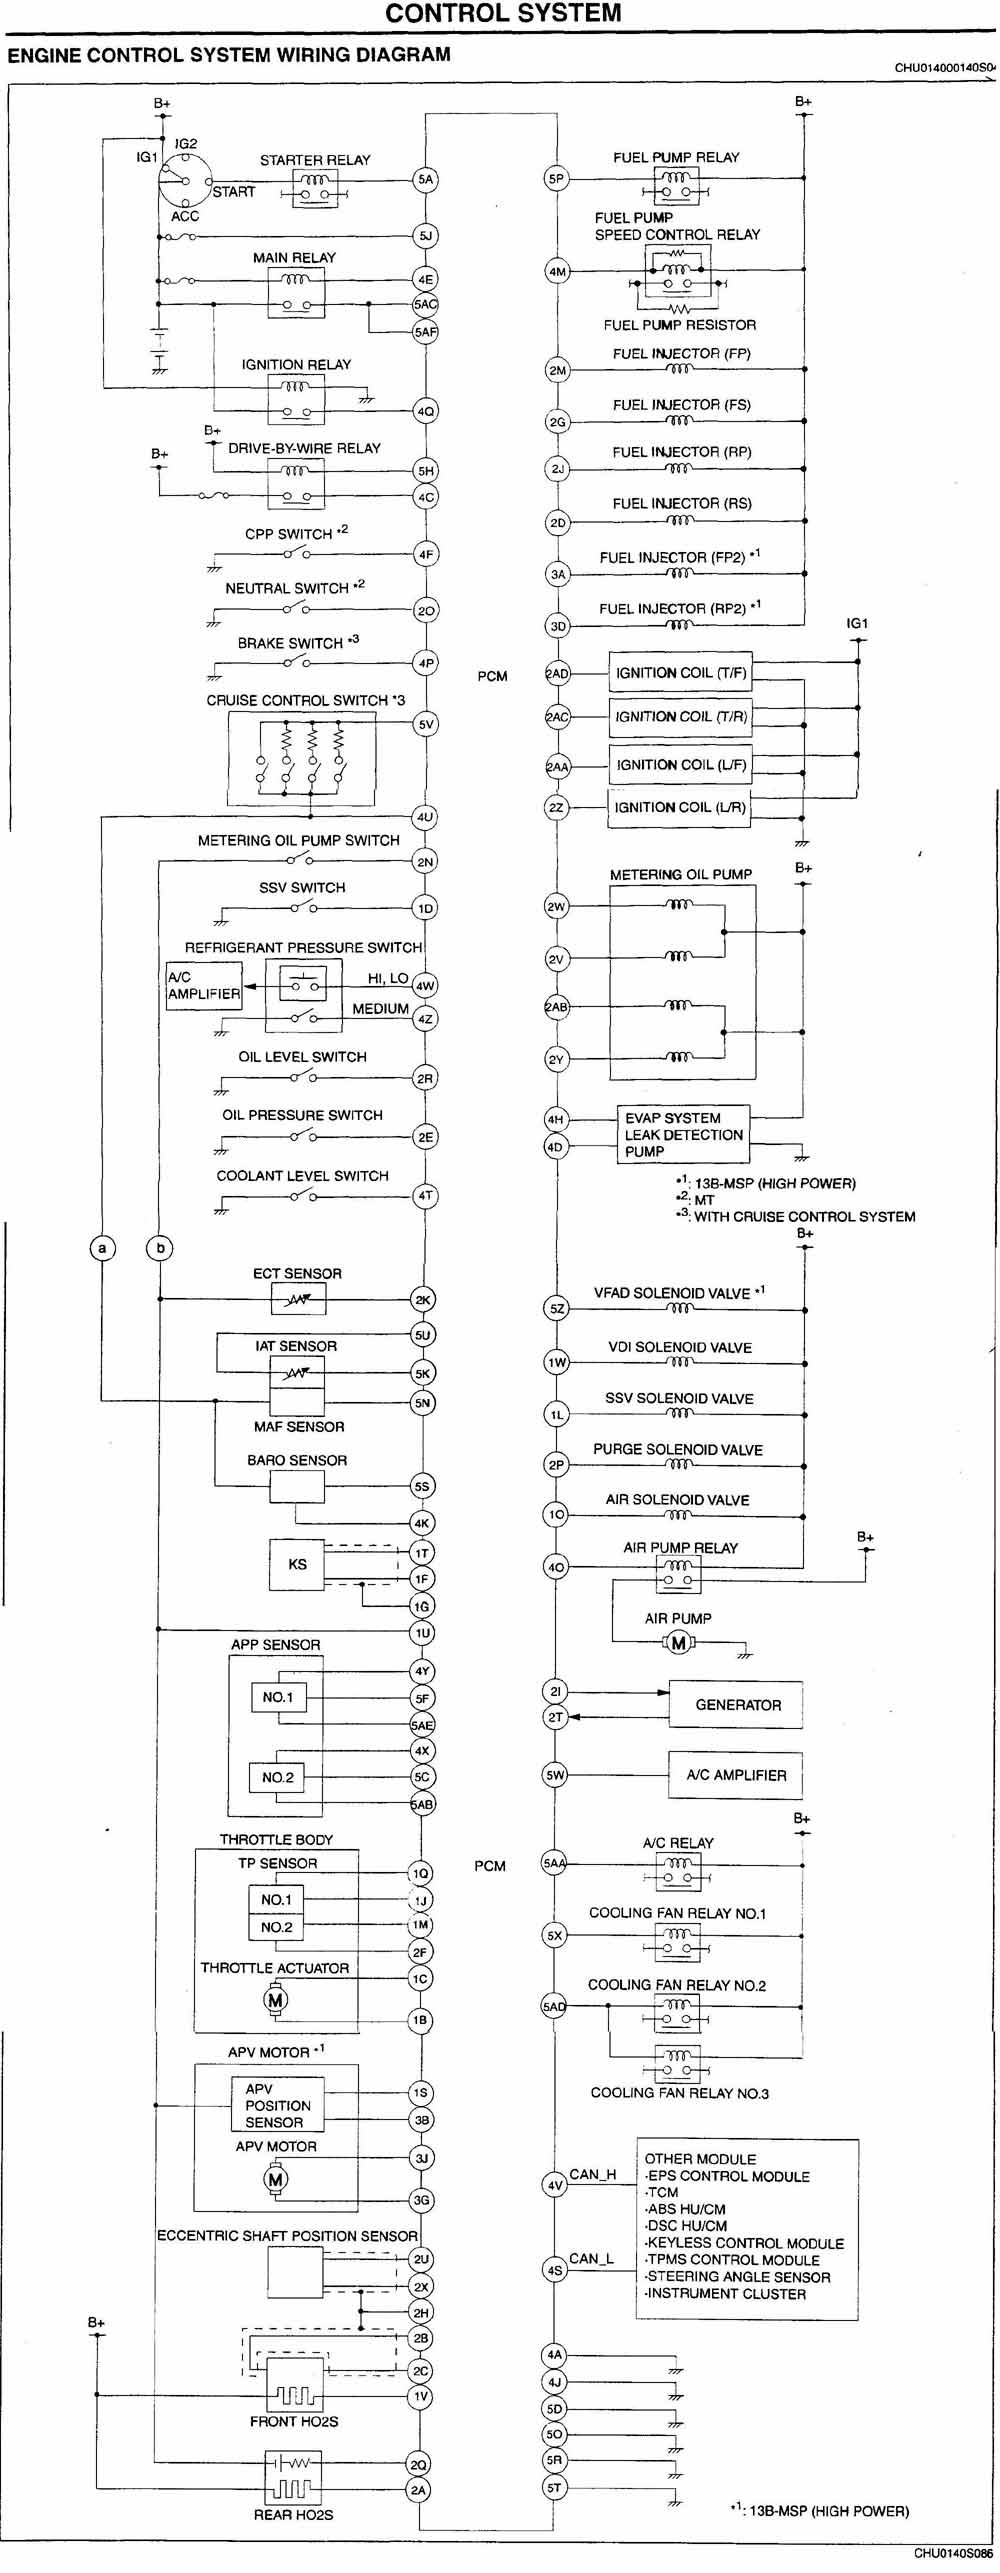 Need ECU connector pin diagram - RX8Club.com